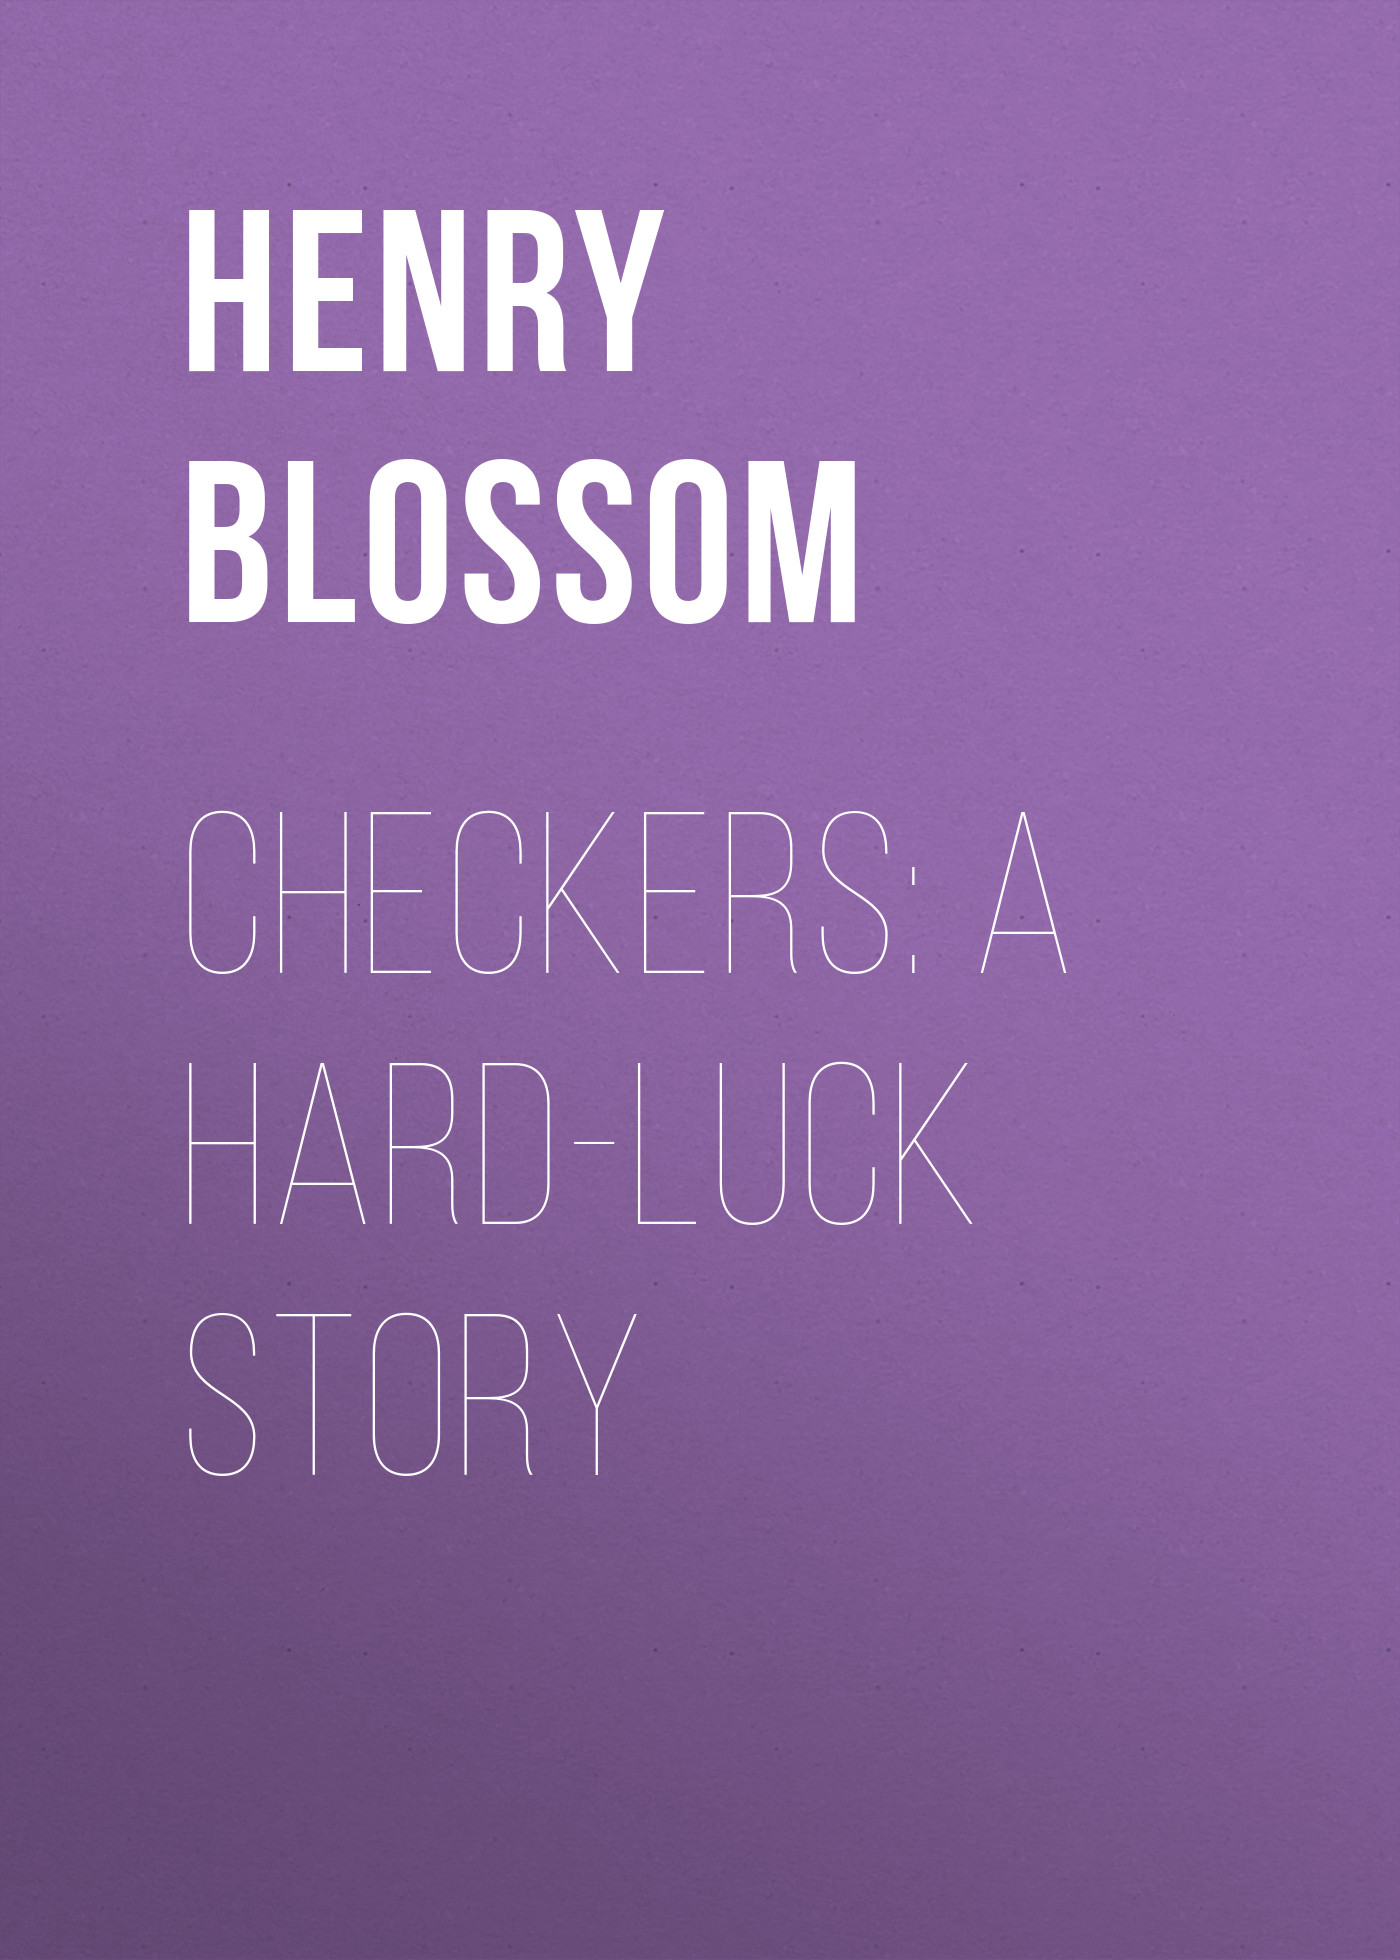 Книга Checkers: A Hard-luck Story из серии , созданная Henry Blossom, может относится к жанру Зарубежная старинная литература, Зарубежная классика. Стоимость электронной книги Checkers: A Hard-luck Story с идентификатором 24169076 составляет 0.90 руб.